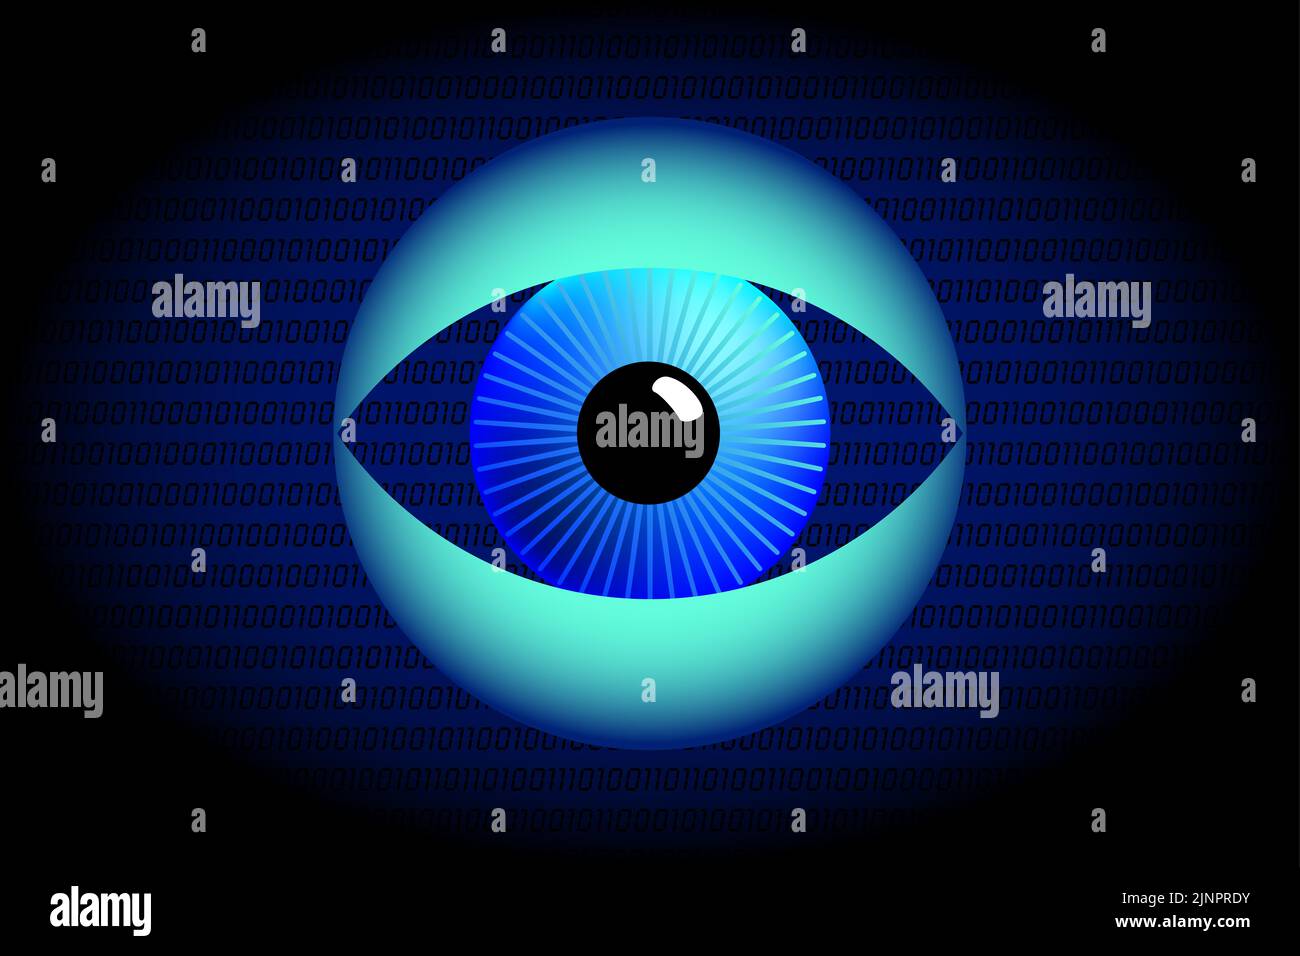 Ojo de vigilancia y símbolo de Big Data. Globo ocular azul entre los párpados turquesa abiertos, frente a un fondo azul oscuro. Foto de stock